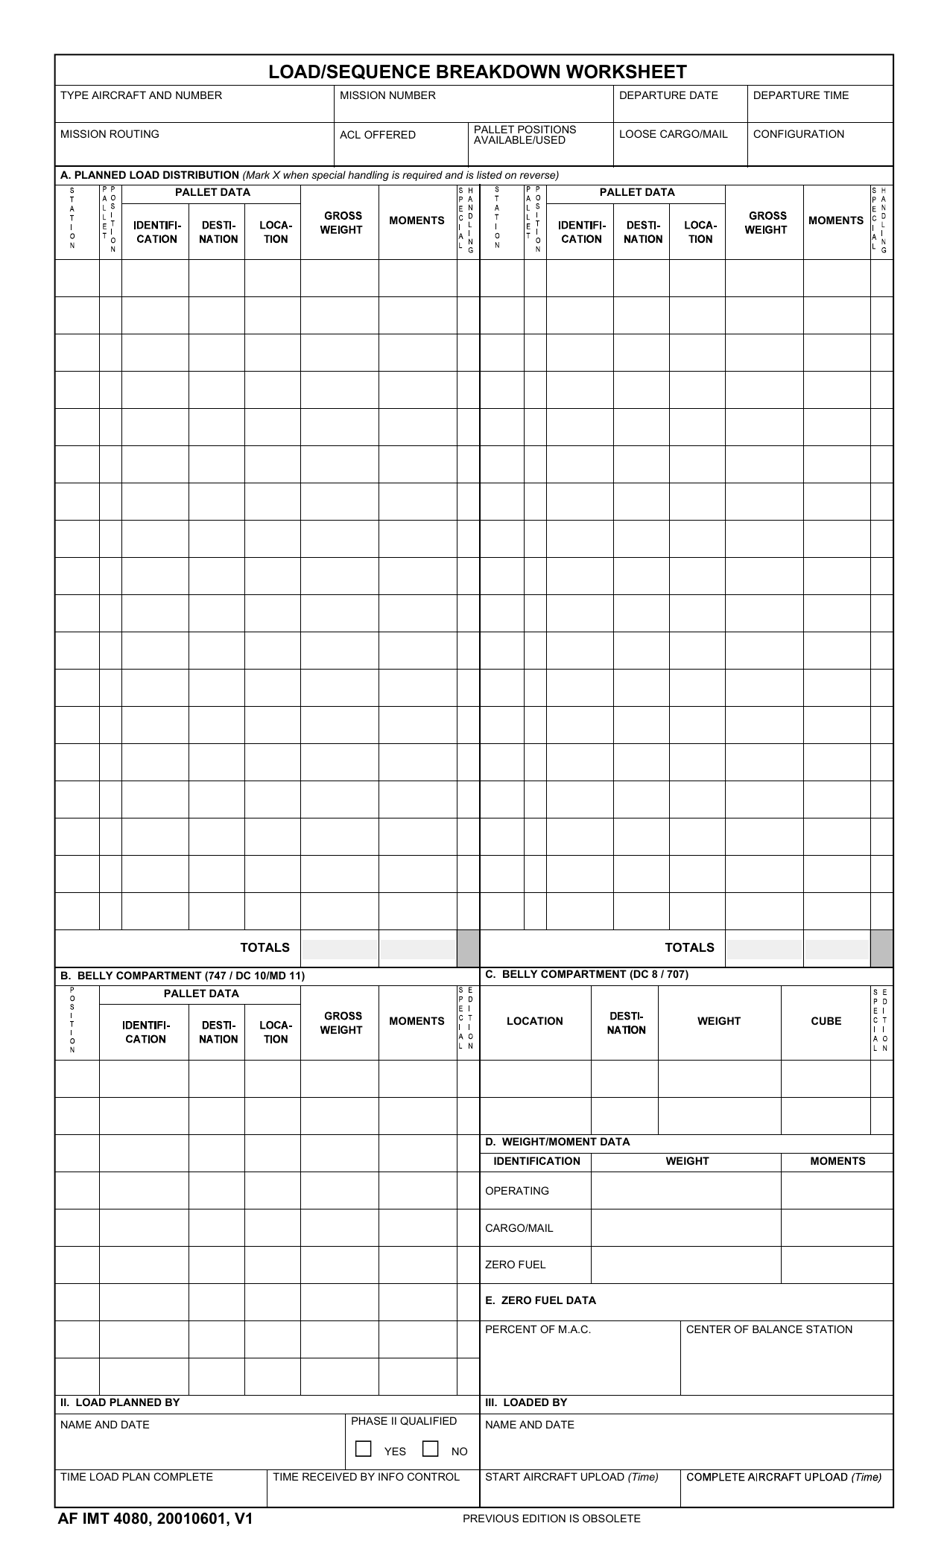 AF IMT Form 4080 Load / Sequence Breakdown Worksheet, Page 1